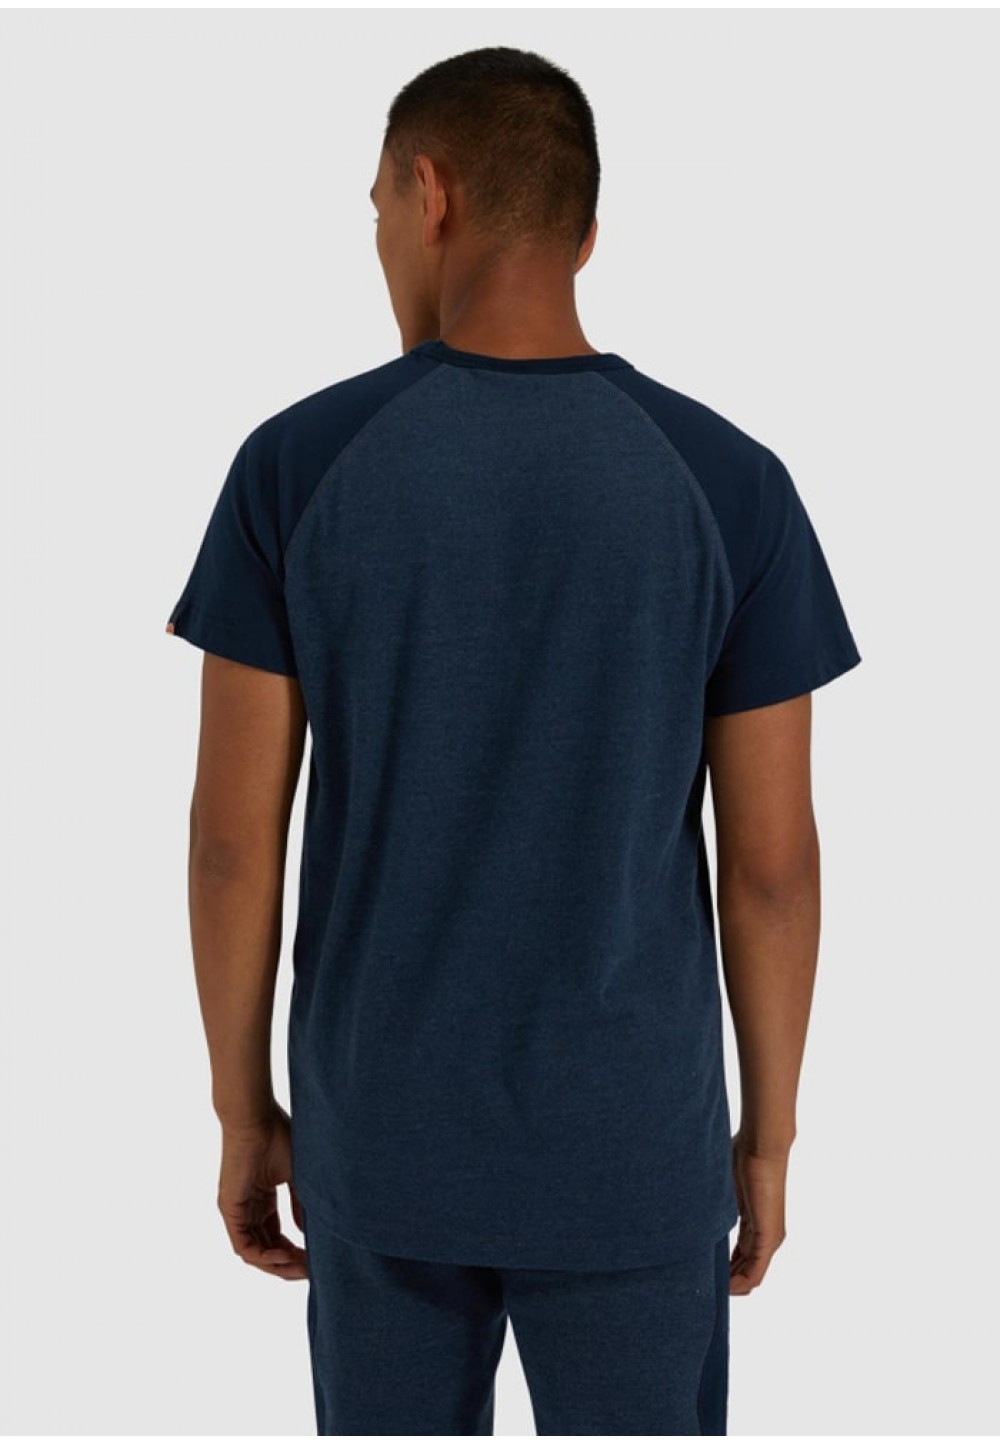 Стильна чоловіча футболка синього кольору